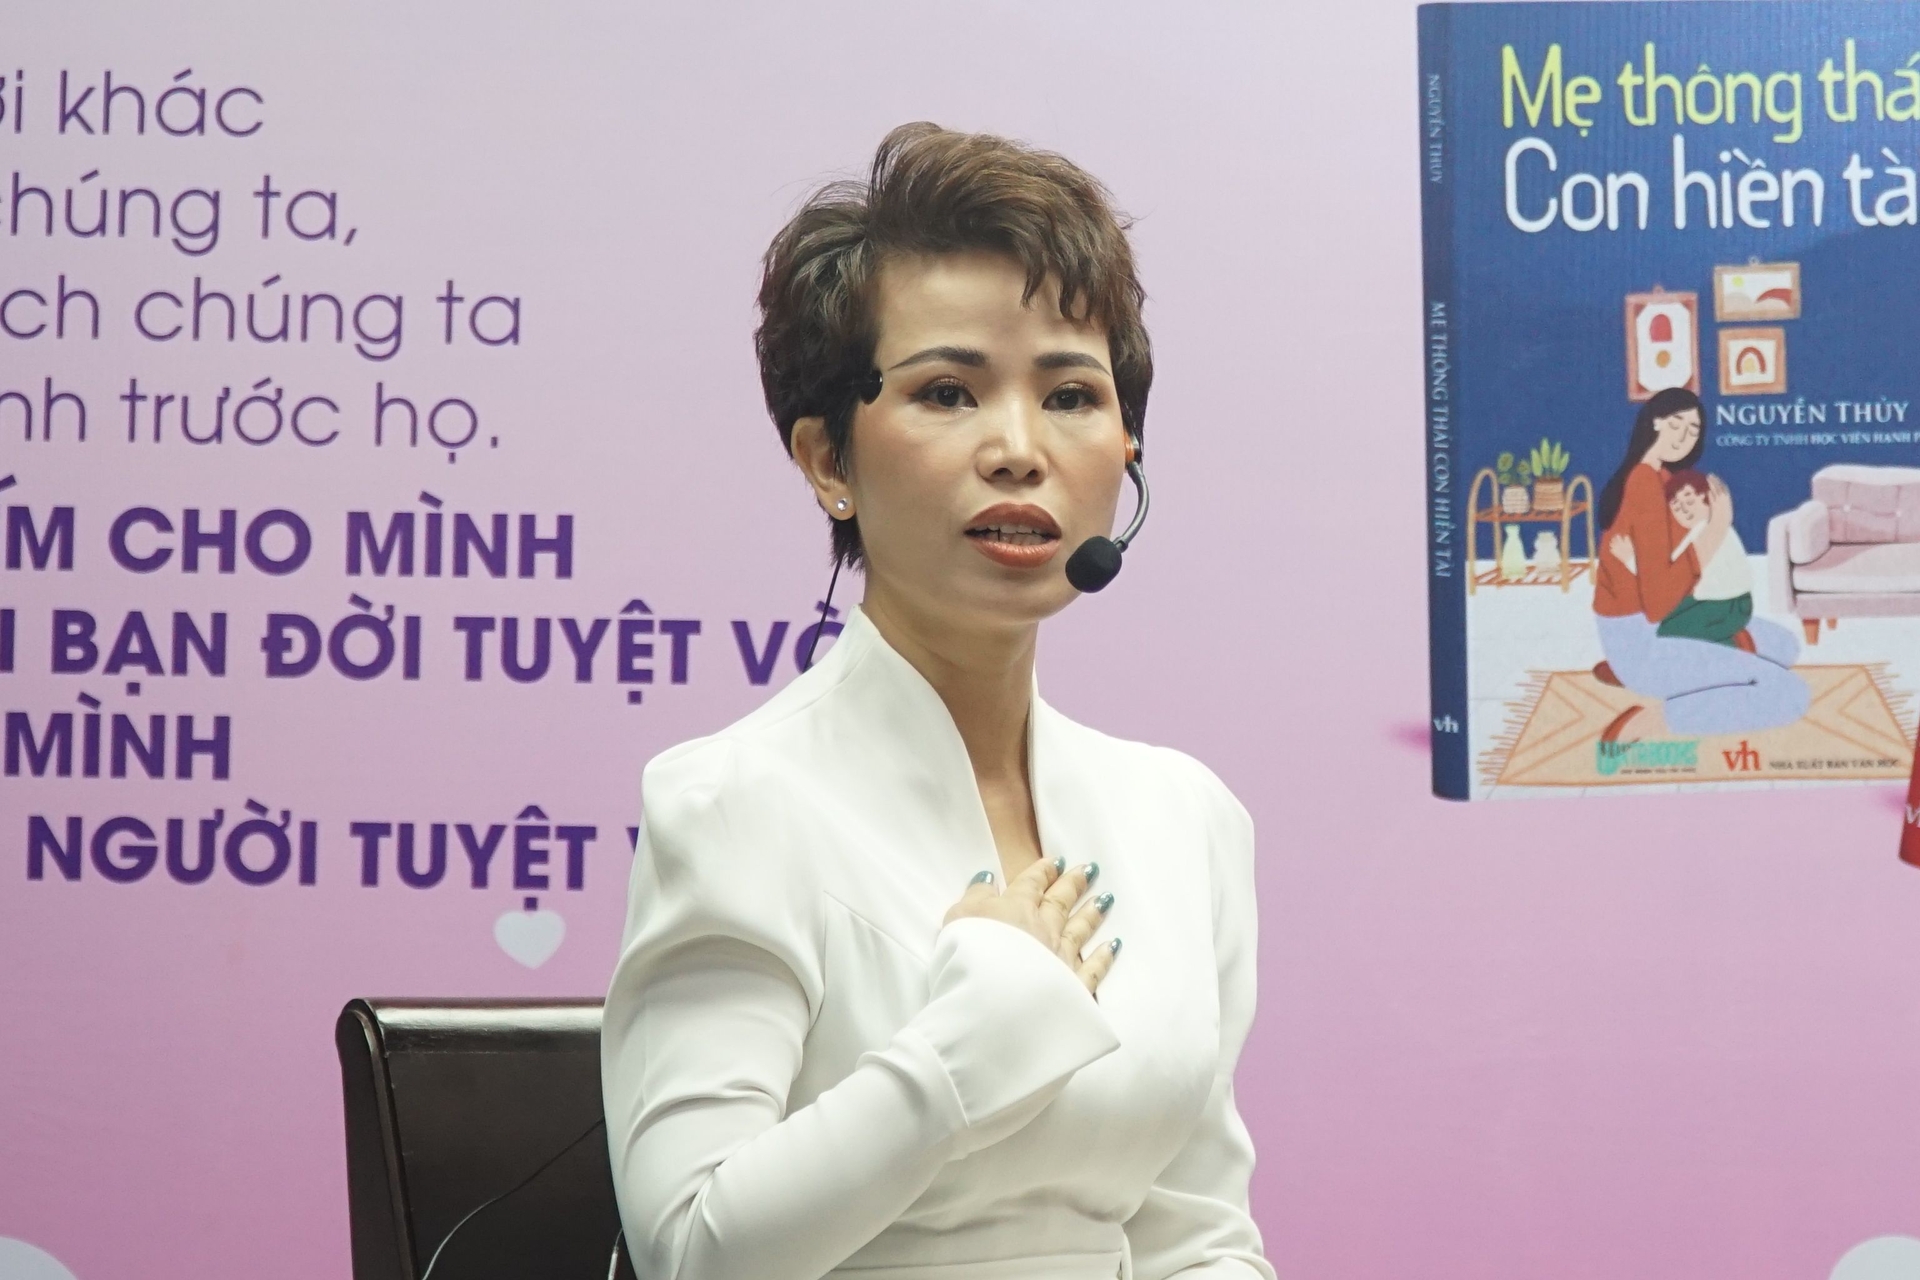 Diễn giả Nguyễn Thủy.